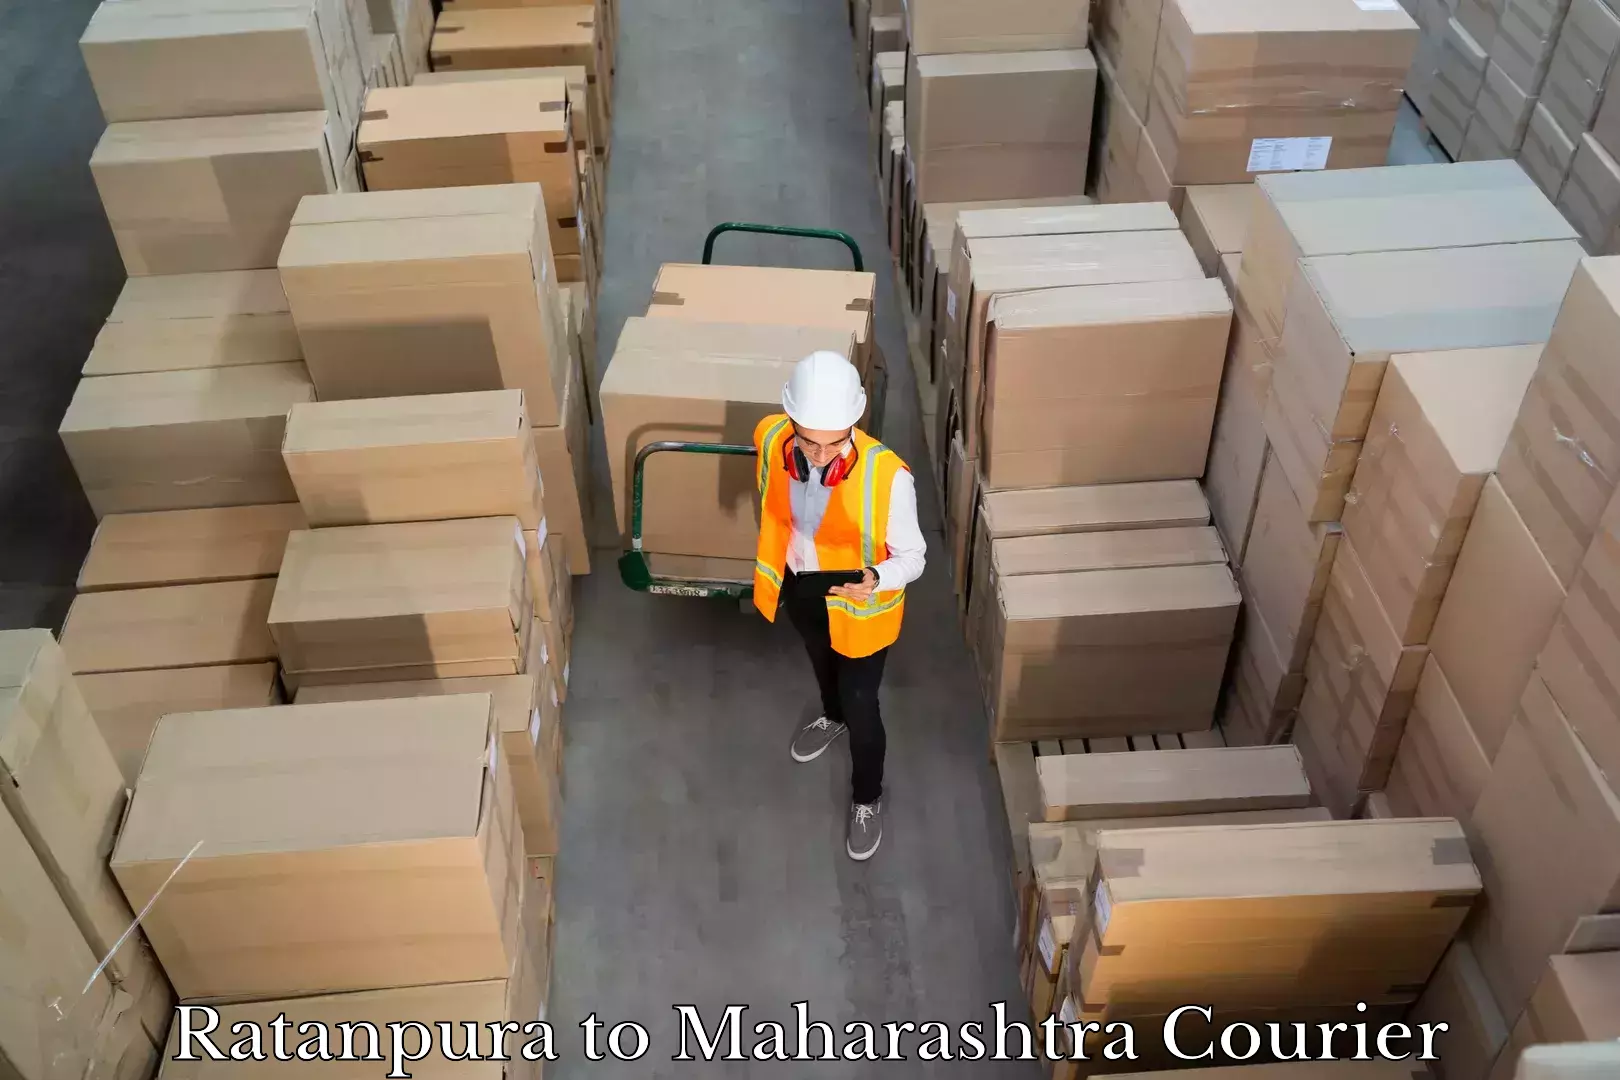 Hassle-free luggage shipping Ratanpura to Maharashtra